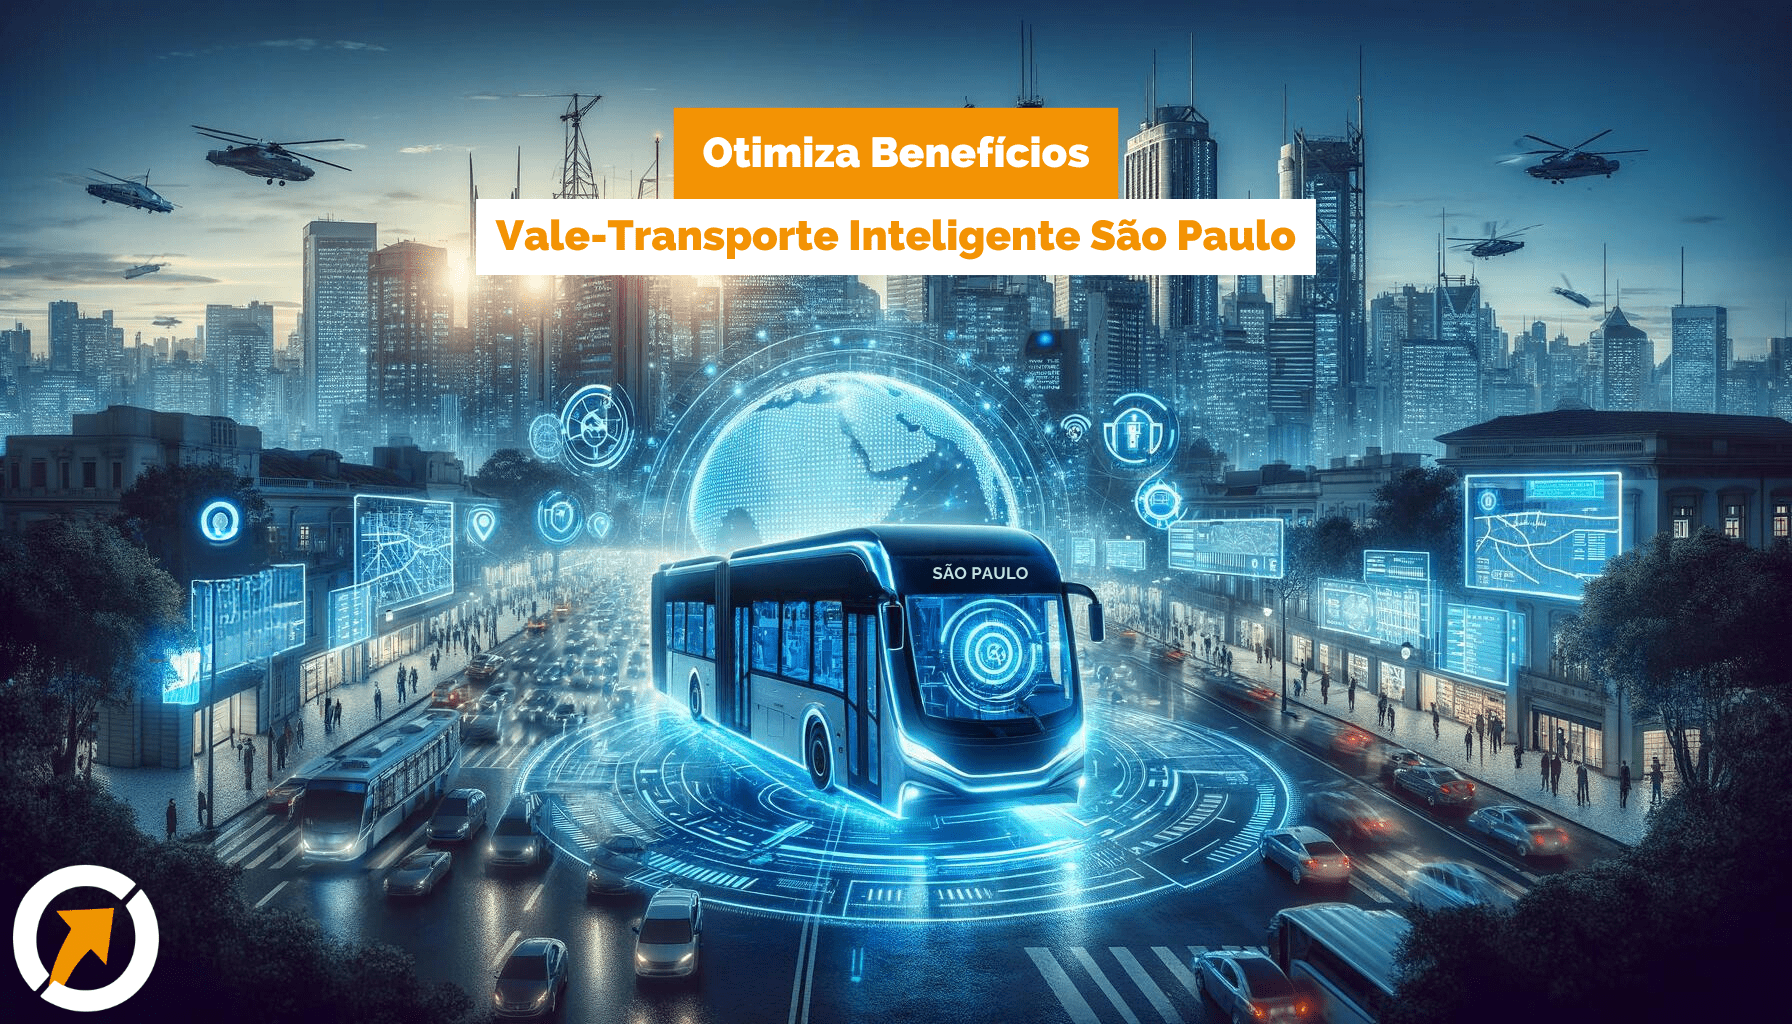 Economia e Inovação: O Vale-Transporte Inteligente da Otimiza Transforma o Transporte Corporativo em São Paulo